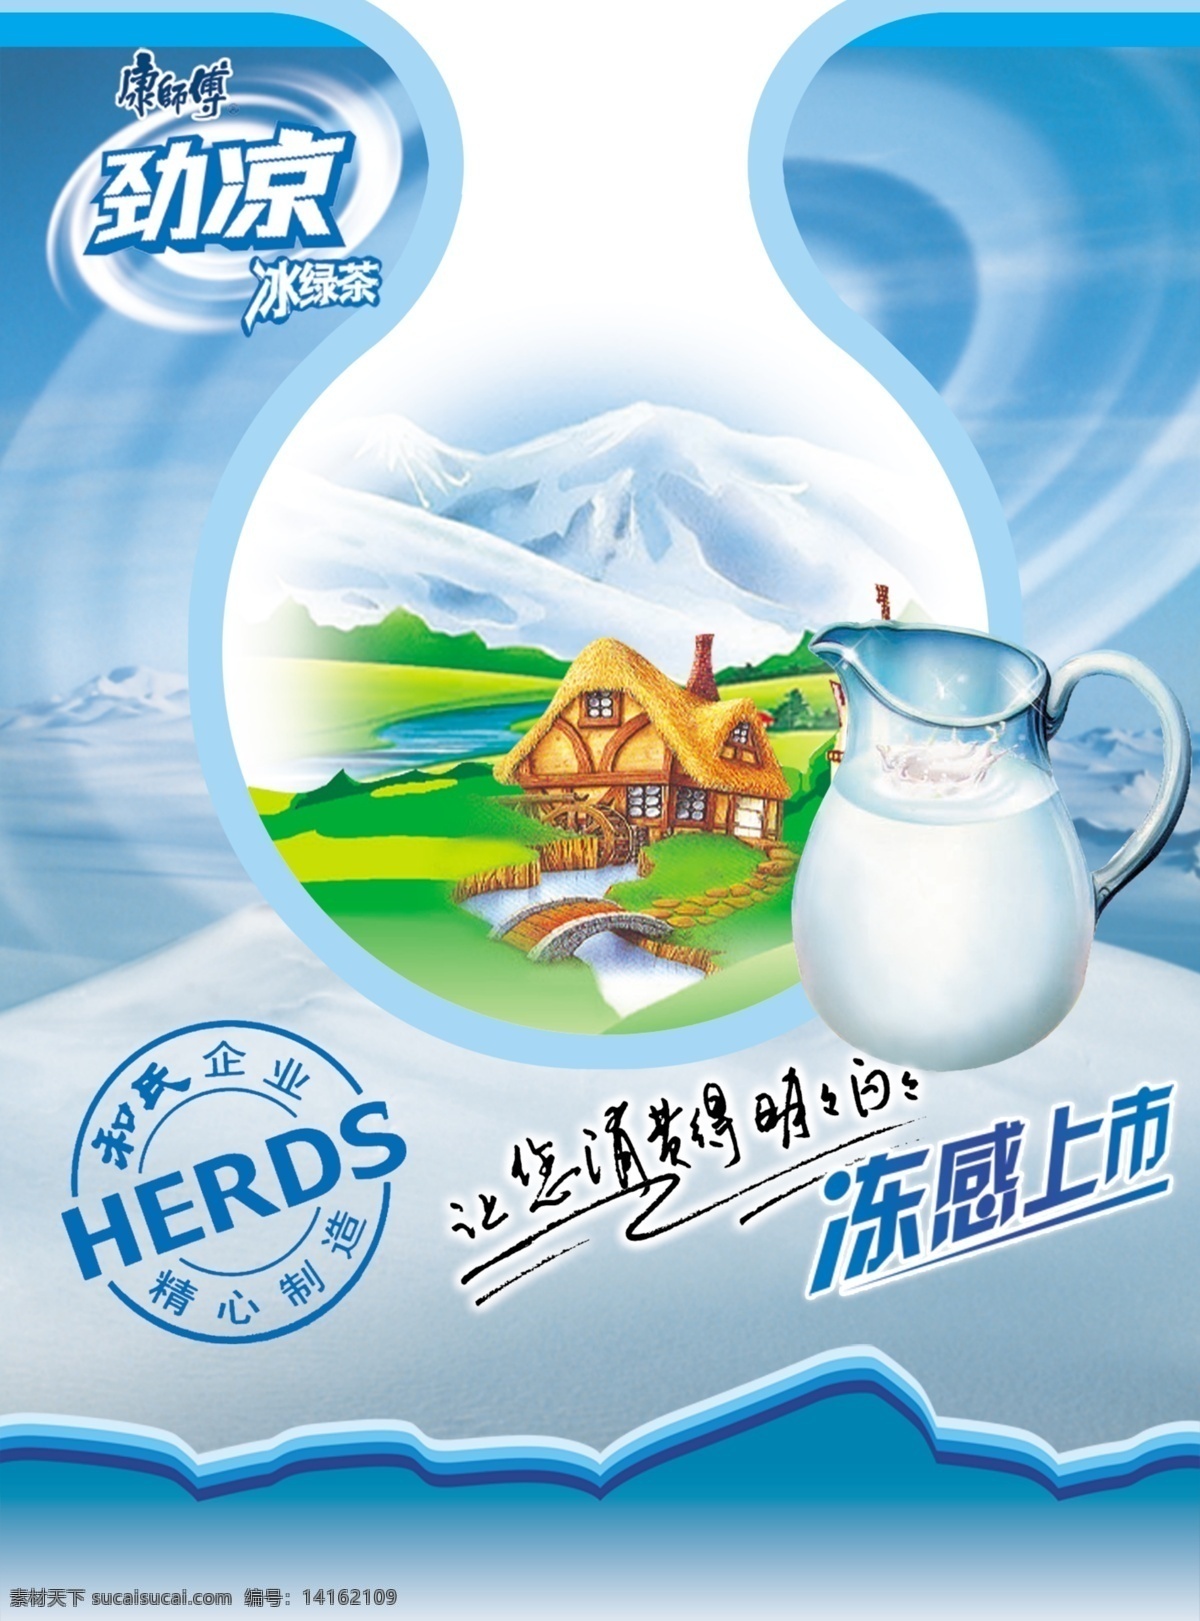 天然牛奶海报 牛奶 奶杯 奶瓶 大自然 天然 牧场 牛奶海报 牛奶包装 冰山